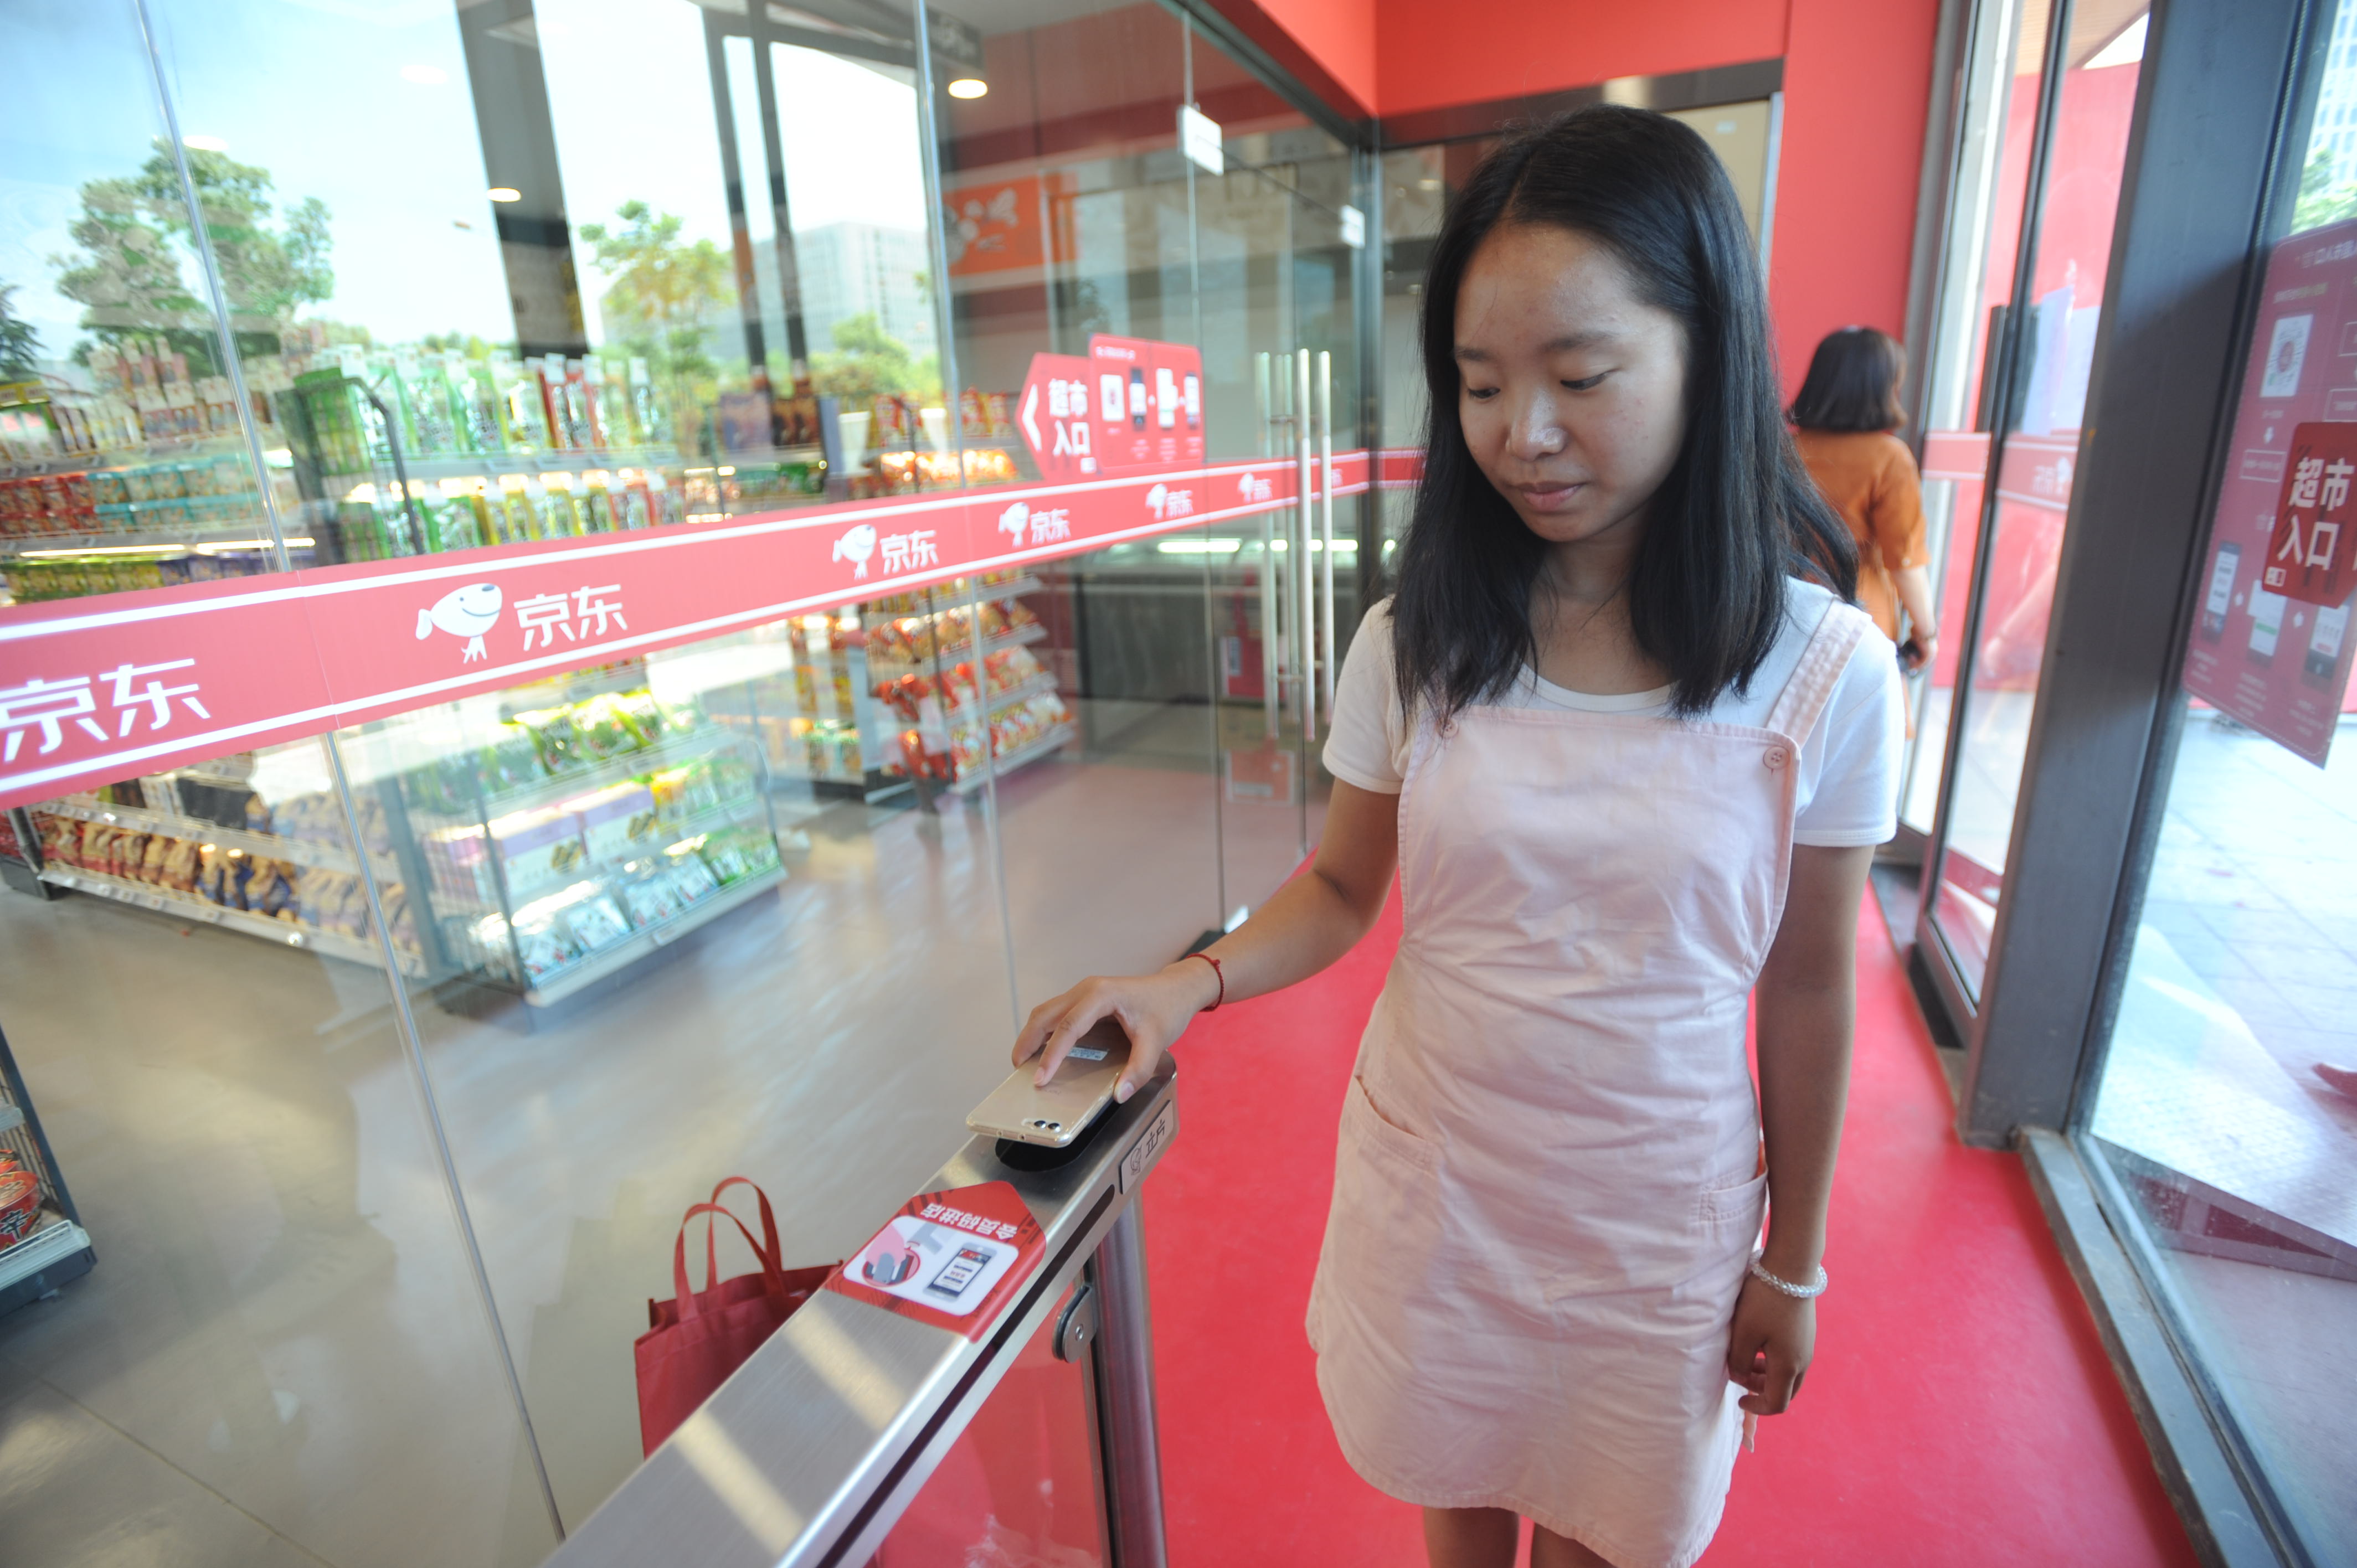 Vásárlás WeChattel Kínában: a vásárló a boltba lépéskor készít magáról egy szelfit, onnantól minden automatikusan történik az áruk összeválogatásától a fizetésig, eladók és kassza nélkül.